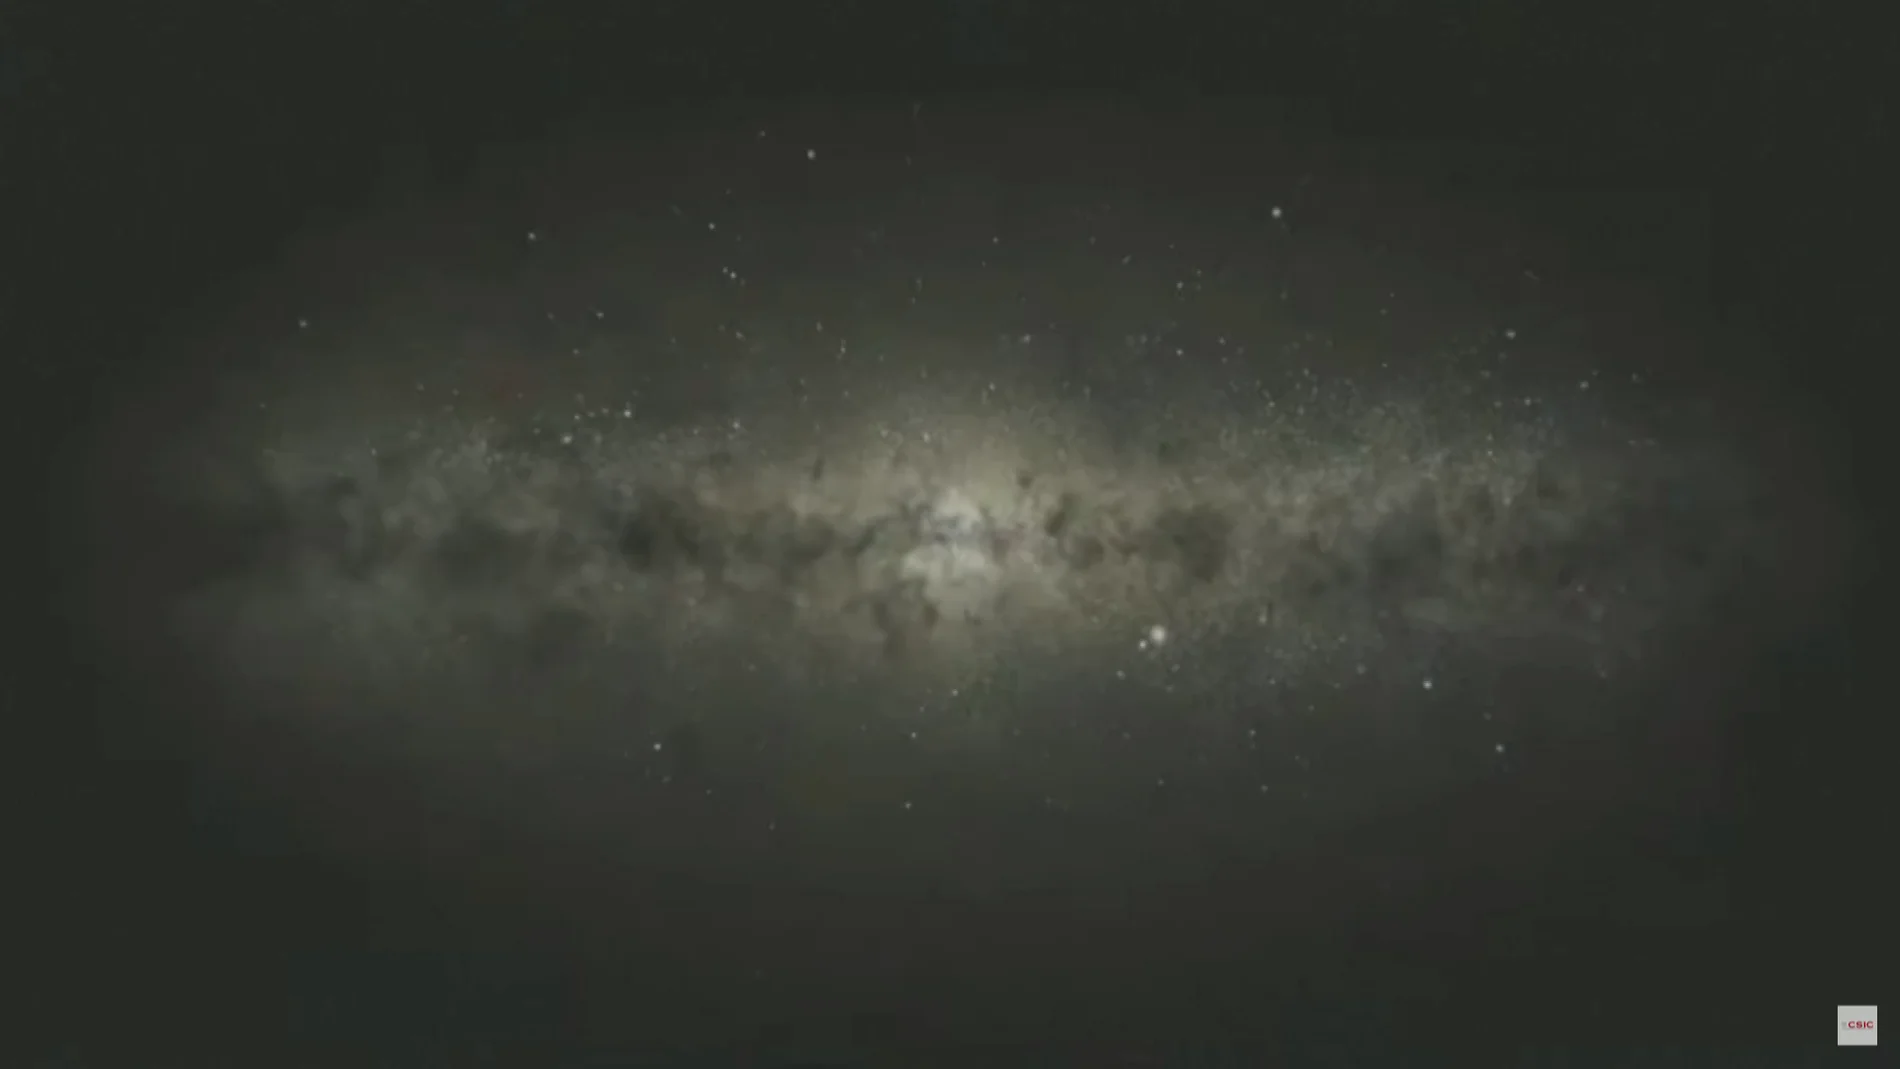 DIRECTO: La primera imagen del agujero negro en nuestra galaxia Sagitario A*, vídeo en streaming